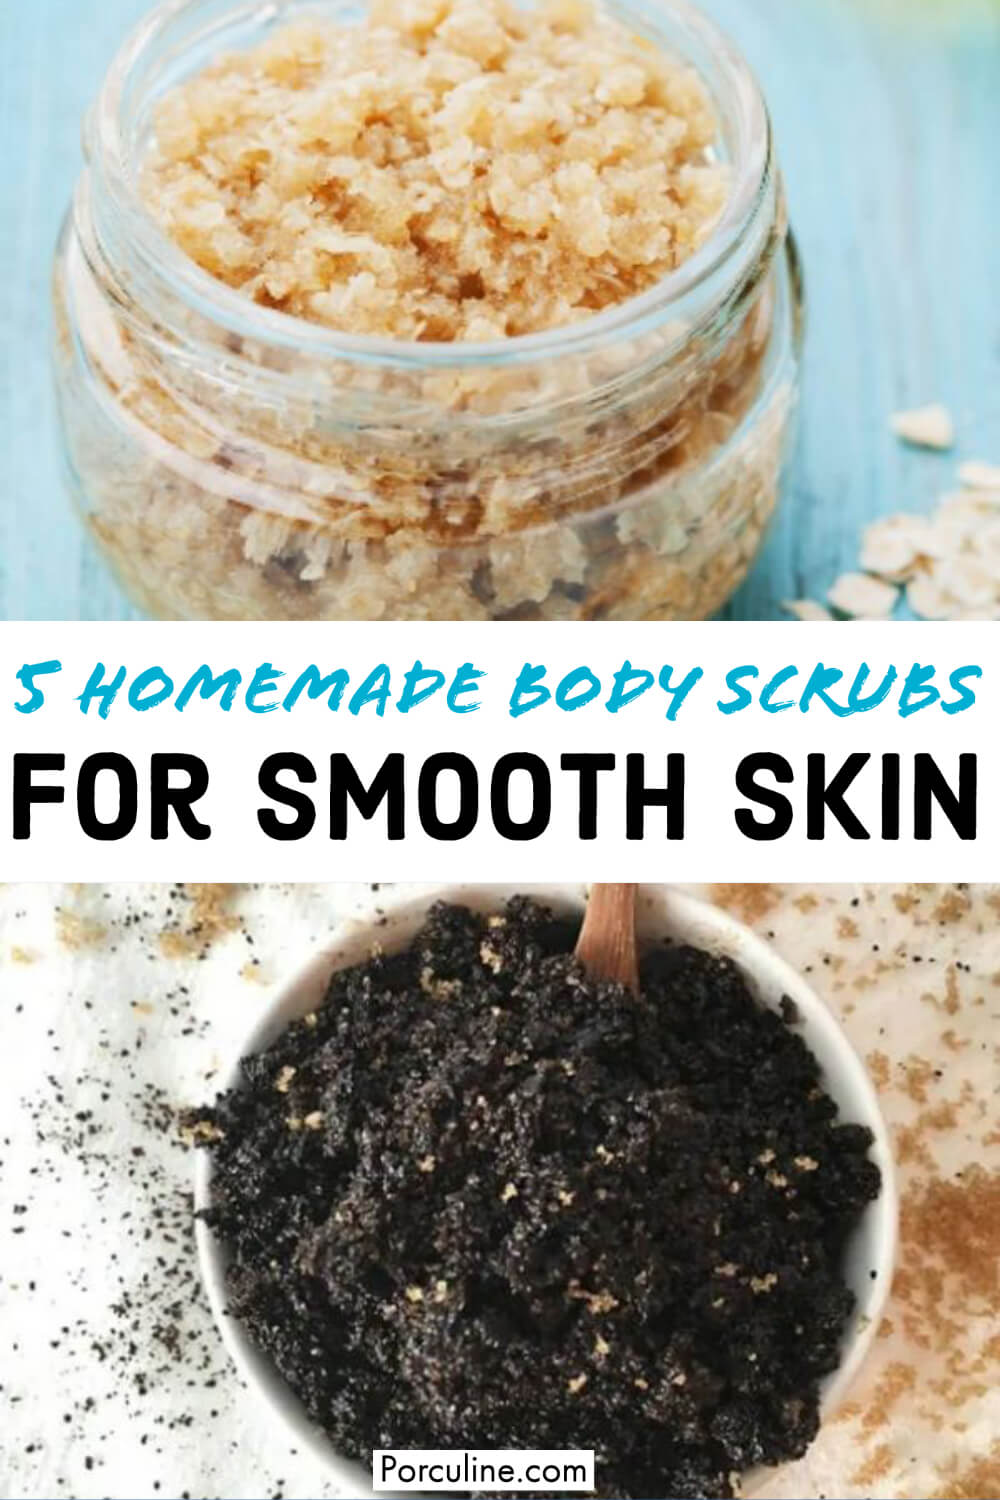 5 Homemade Body Scrubs for Smooth Skin - Porculine.com